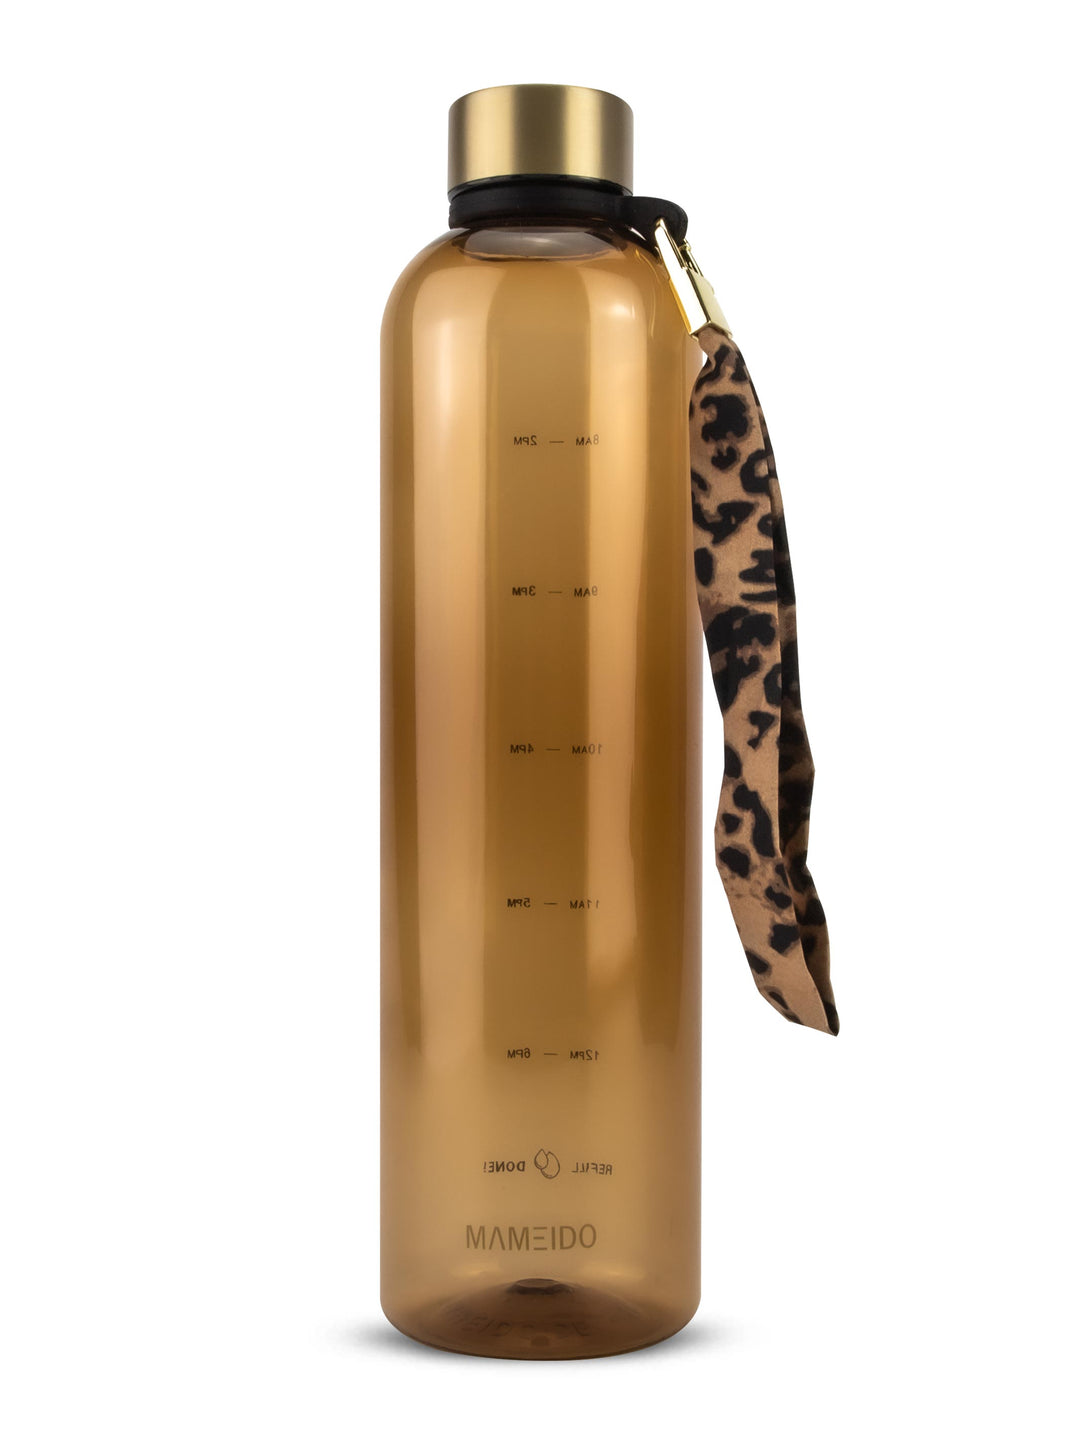 MAMEIDO Trinkflasche 1l mit Zeitmarkierung Amber Gold #farbe_amber-gold